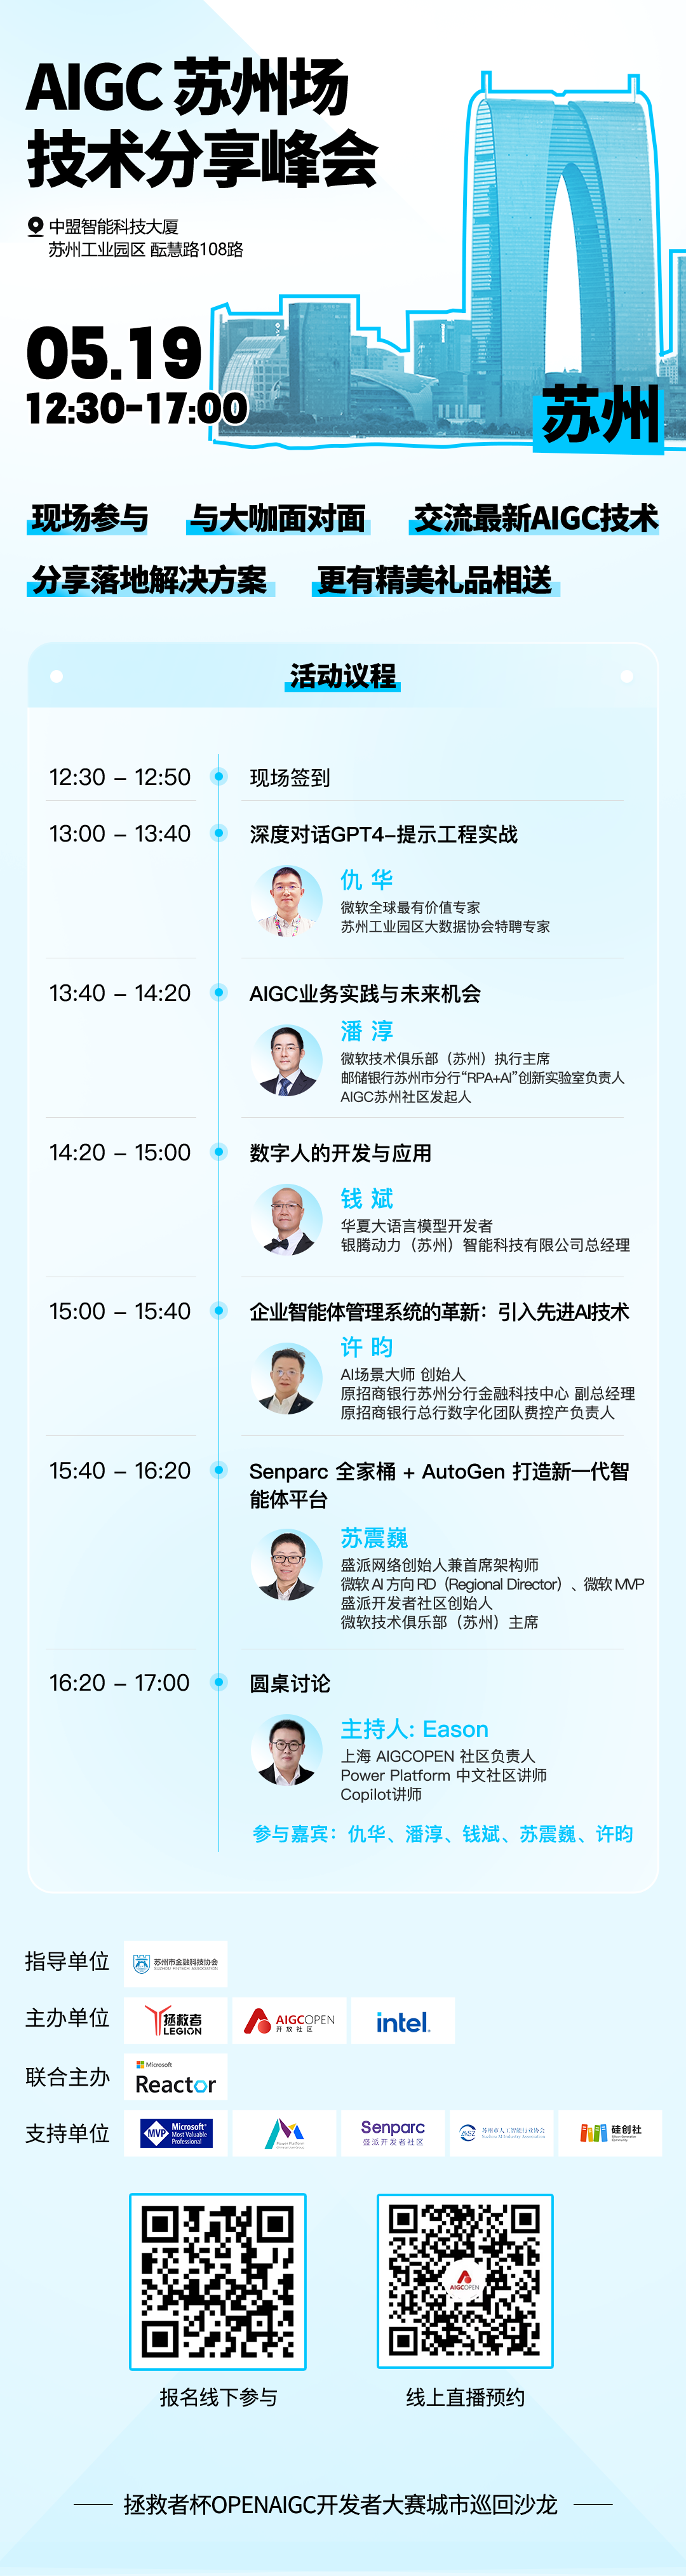 报名 | AIGC技术分享峰会苏州场来啦！